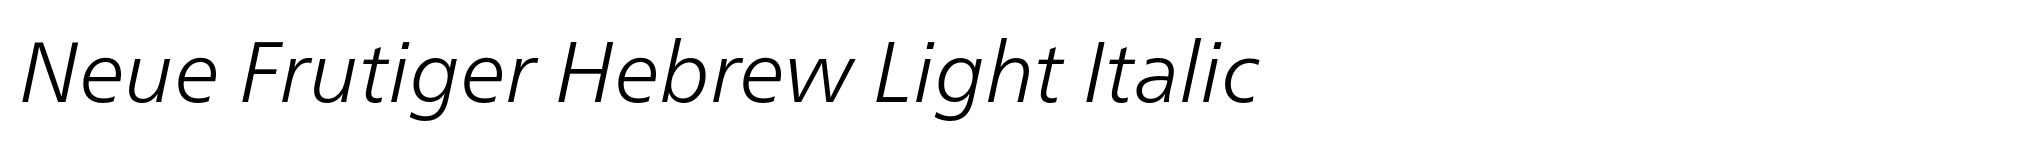 Neue Frutiger Hebrew Light Italic image